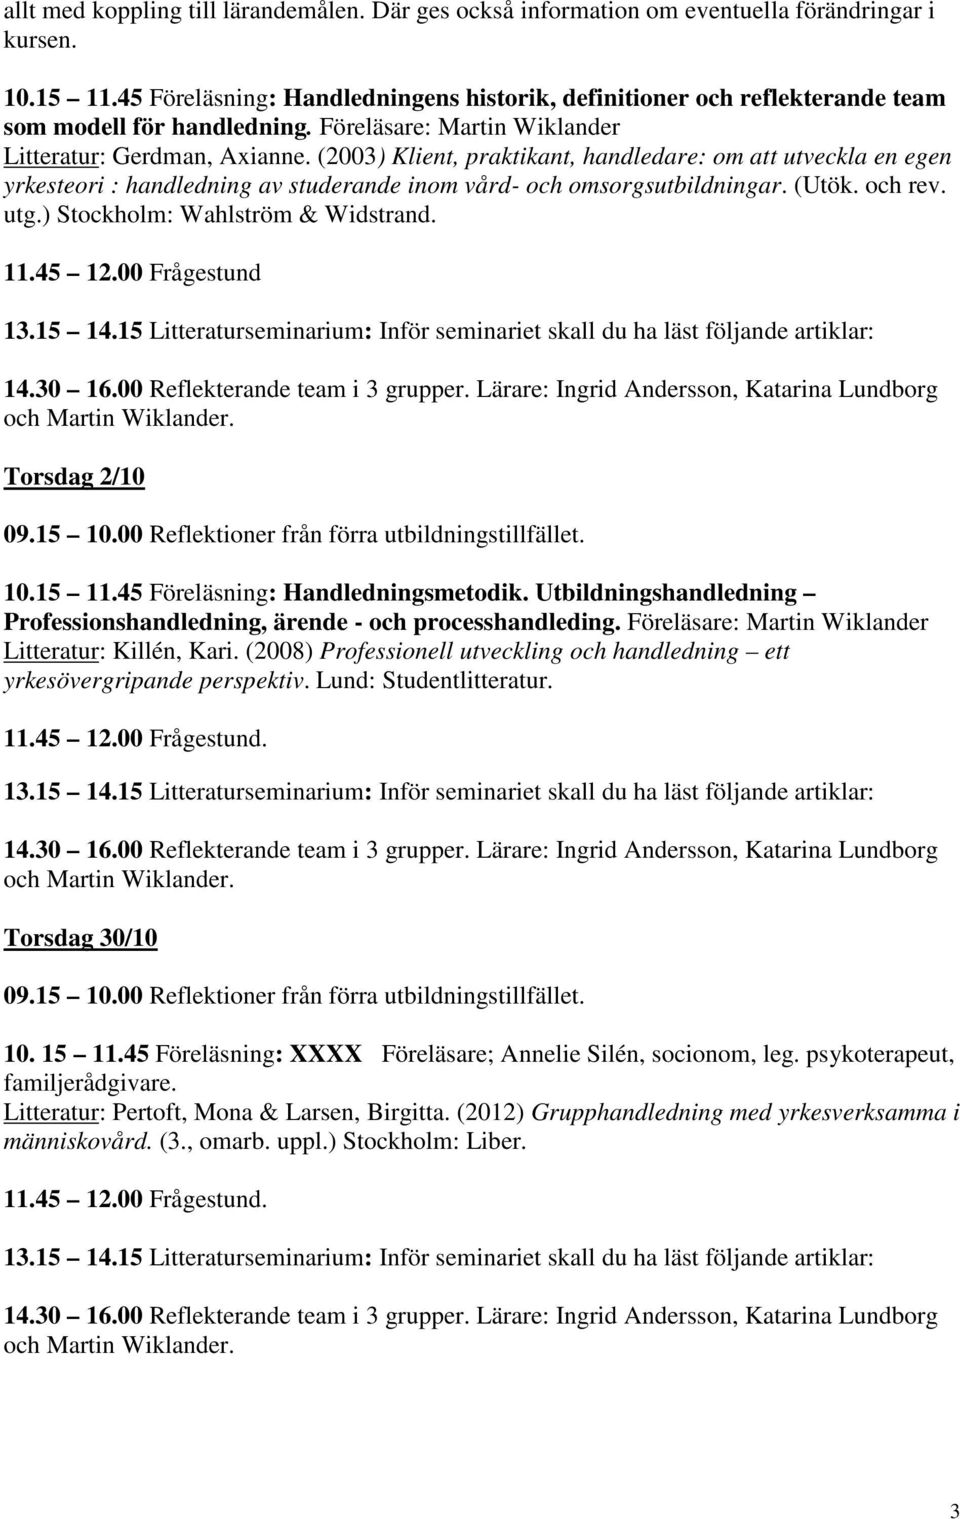 (2003) Klient, praktikant, handledare: om att utveckla en egen yrkesteori : handledning av studerande inom vård- och omsorgsutbildningar. (Utök. och rev. utg.) Stockholm: Wahlström & Widstrand. 11.